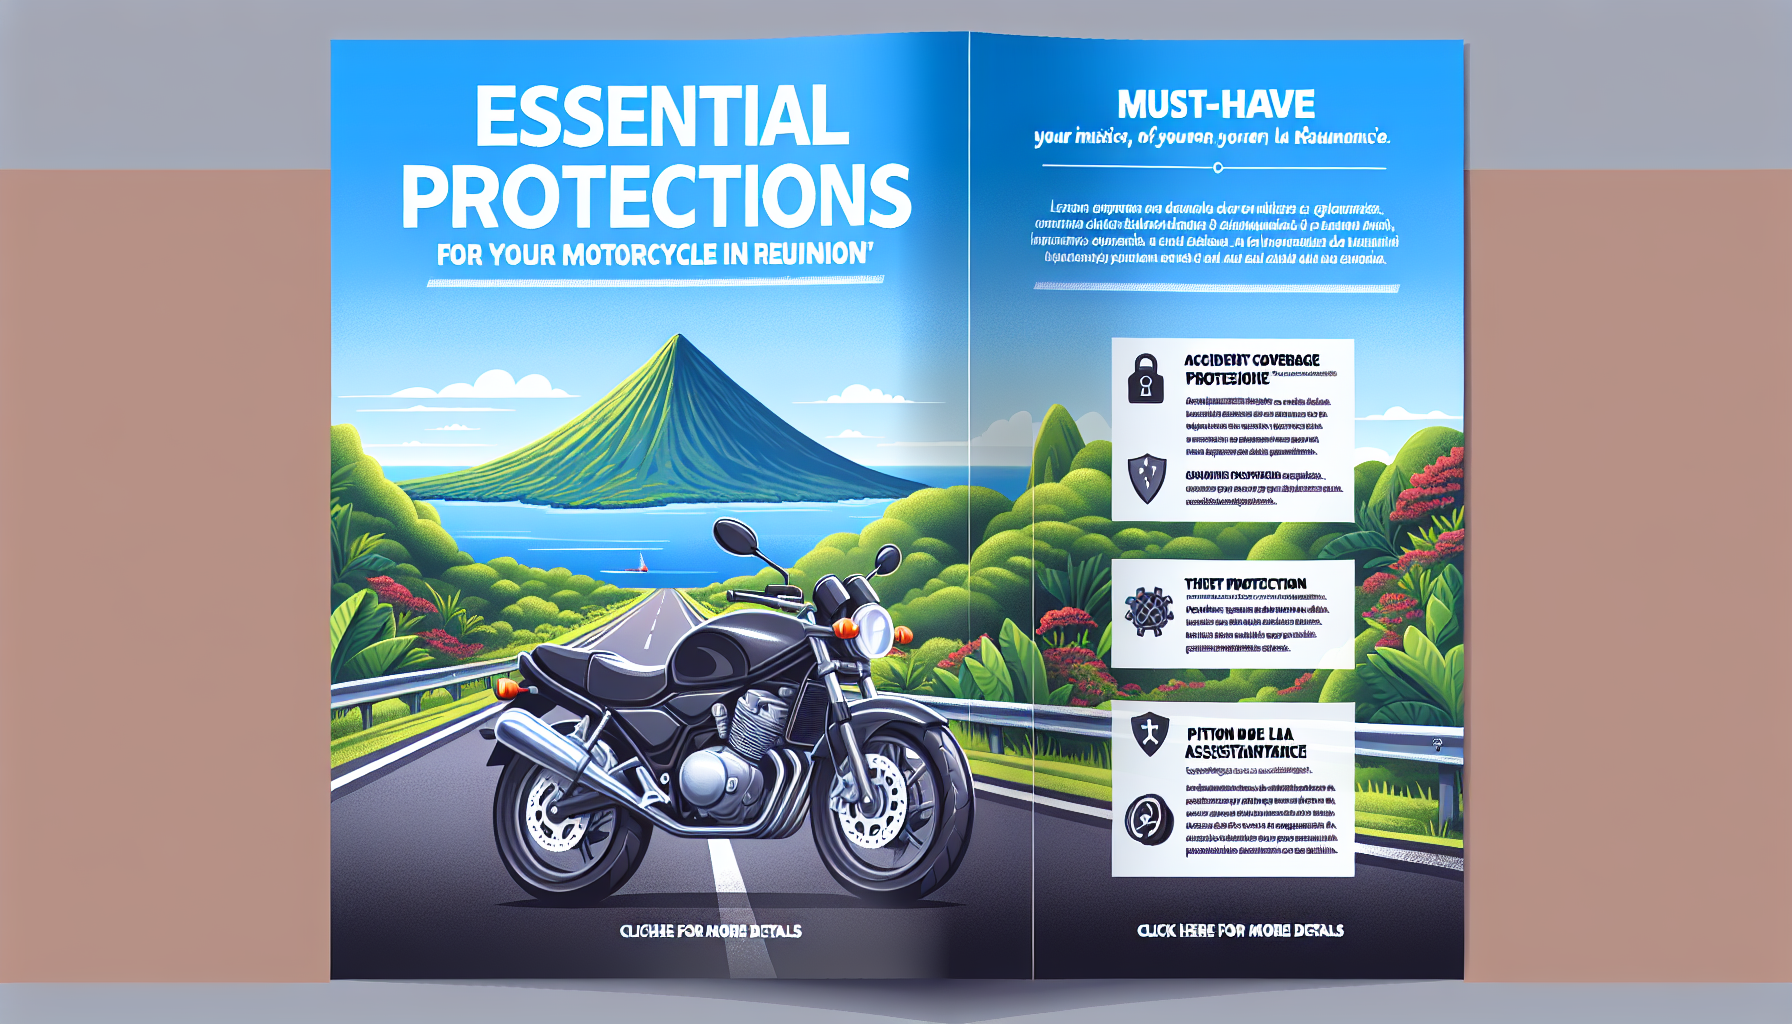 découvrez les garanties indispensables pour une assurance moto à la réunion. conseils et informations sur l'assurance moto à la réunion.